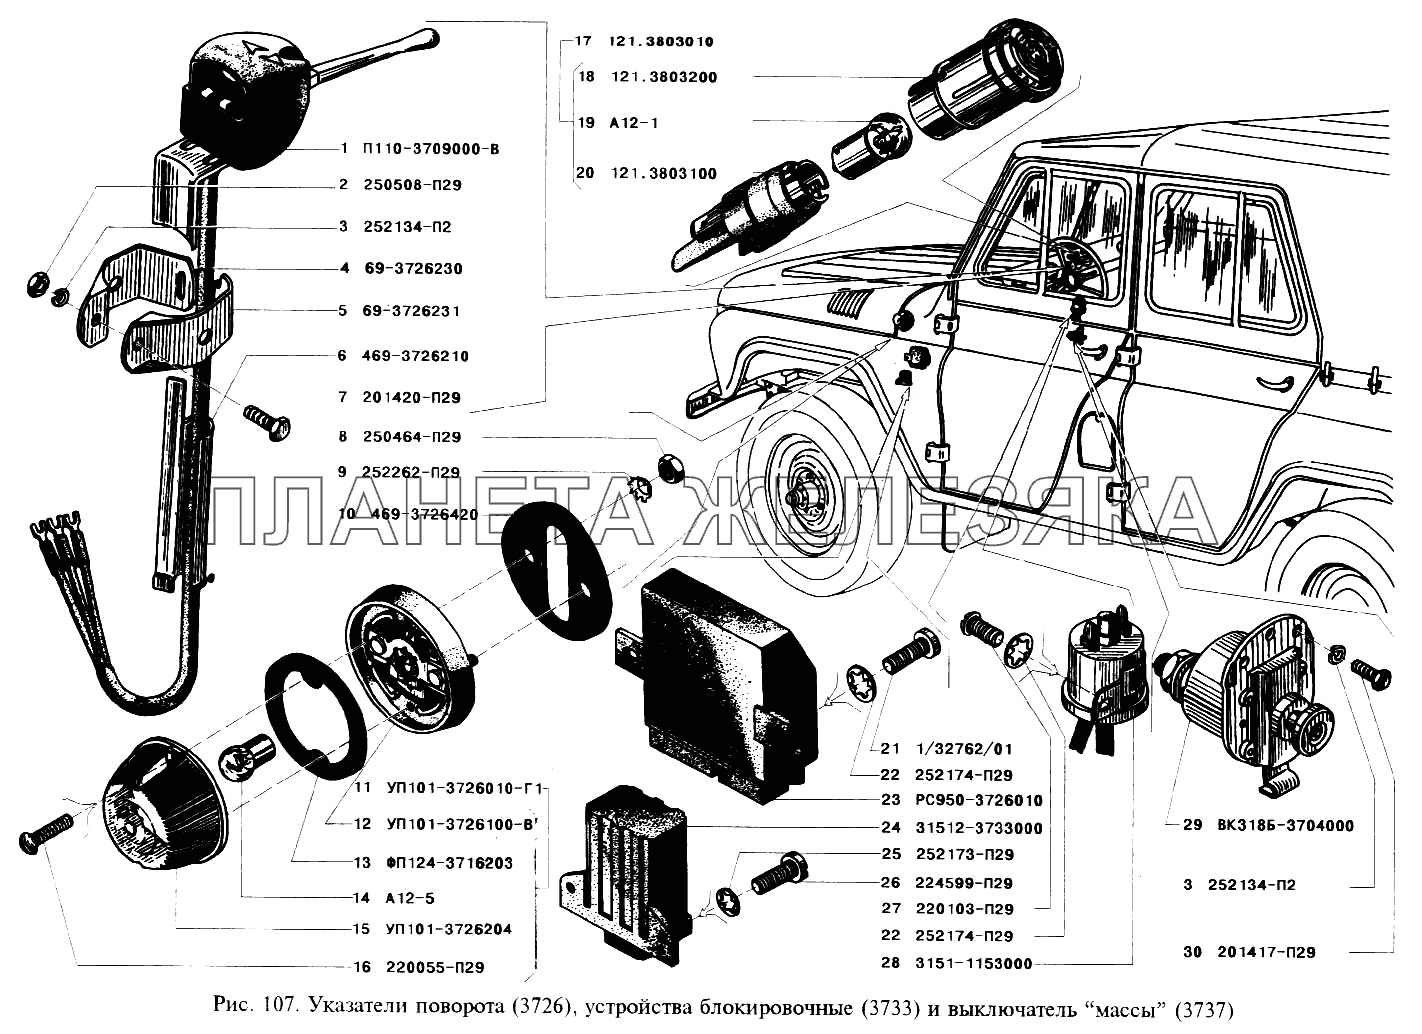 Указатели поворота, устройства блокировочные и выключатель массы УАЗ-3151